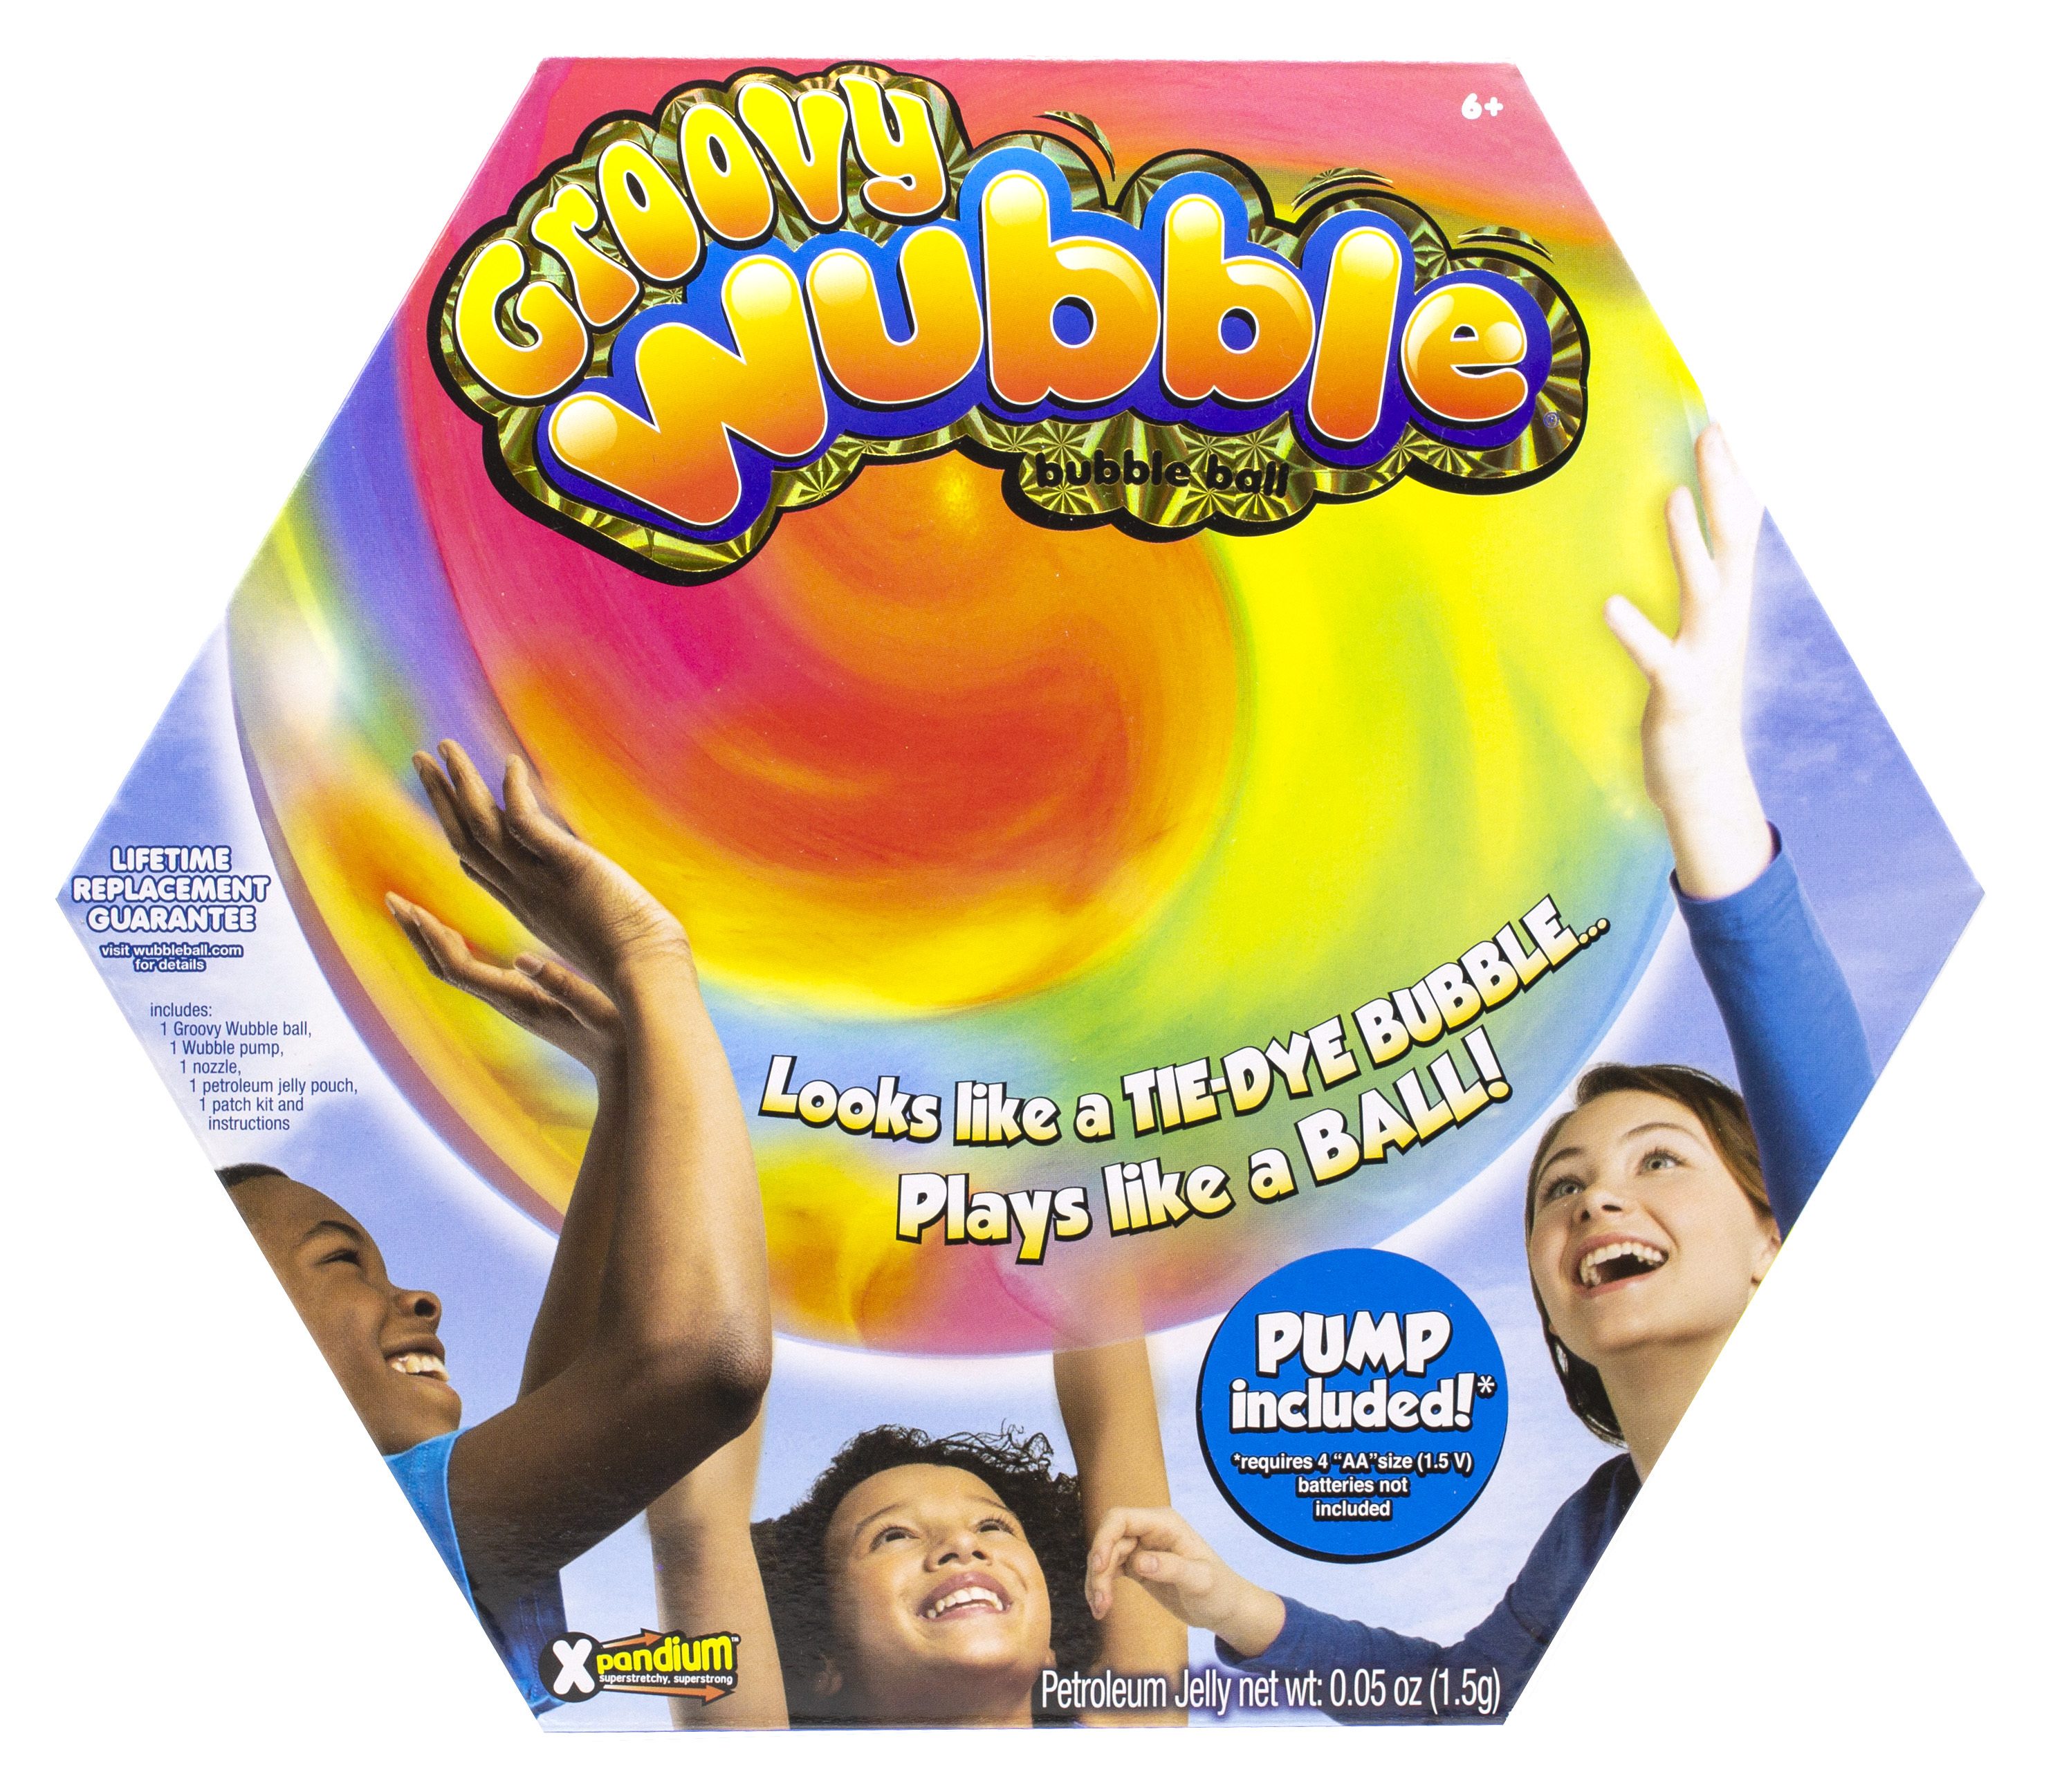 giant wubble bubble ball